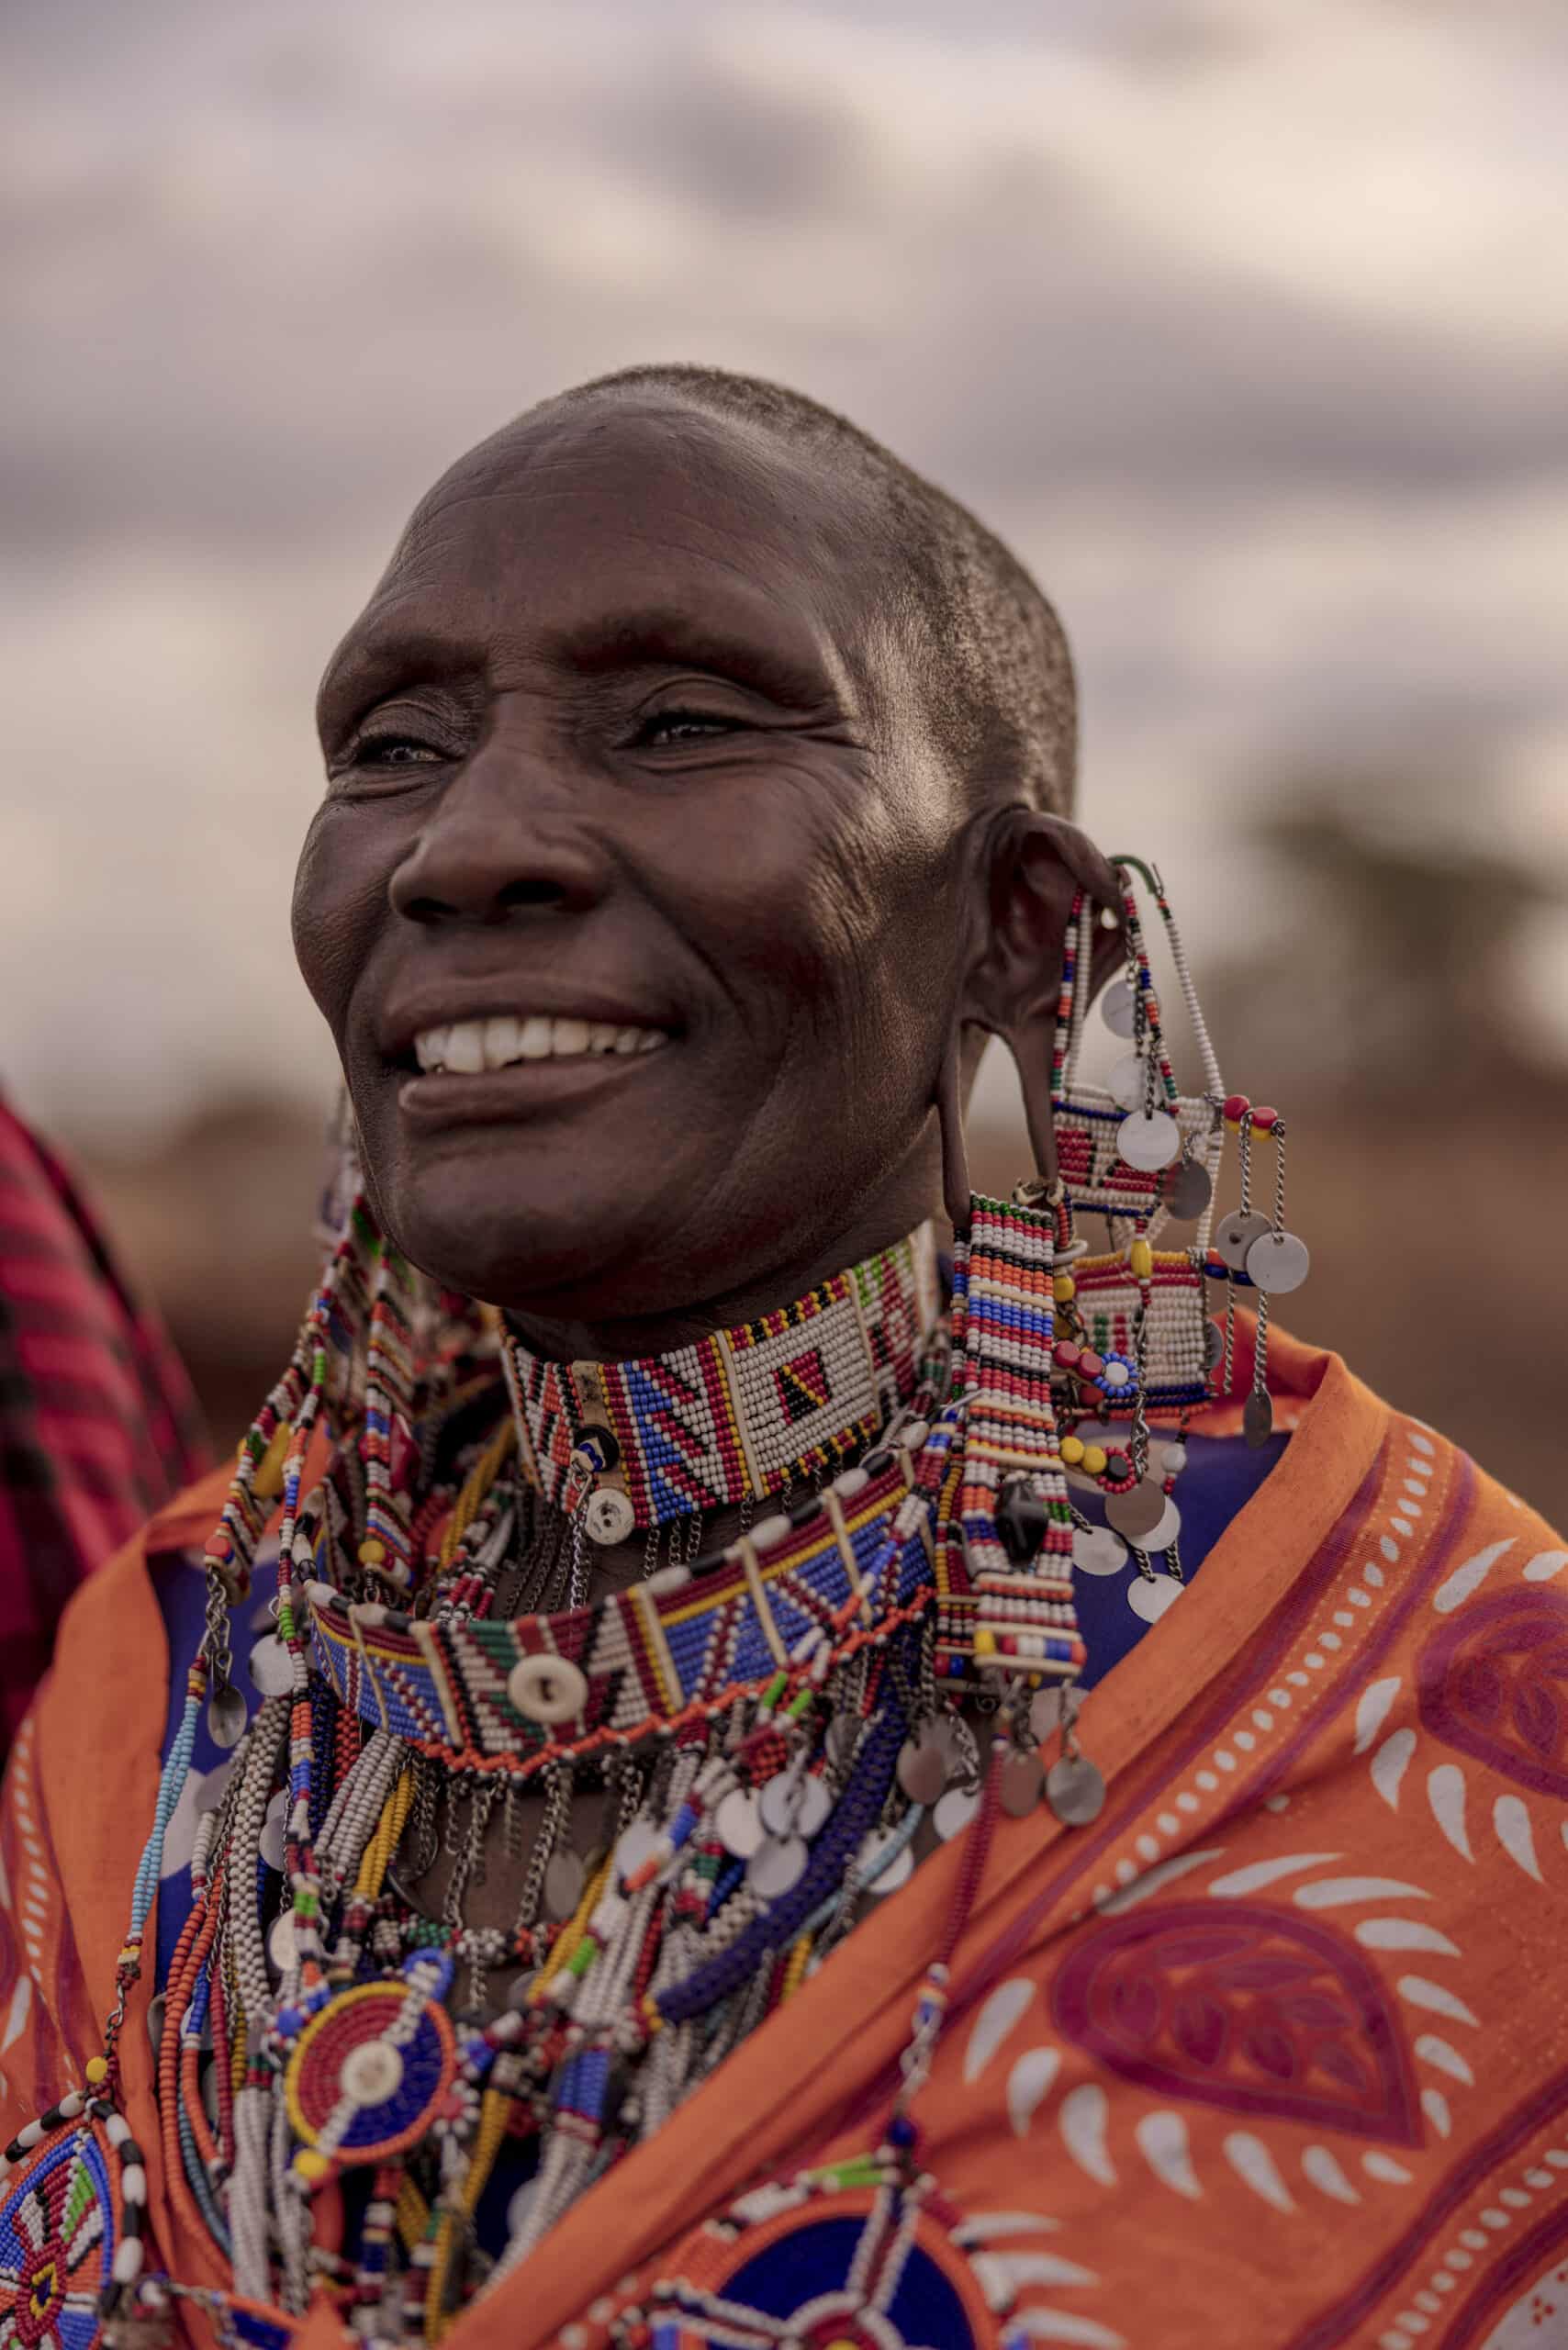 Eine ältere Massai-Frau in traditioneller Kleidung, geschmückt mit bunten Perlenketten und Ohrringen, lächelt breit im Freien unter einem sanften, dämmrigen Himmel. © Fotografie Tomas Rodriguez